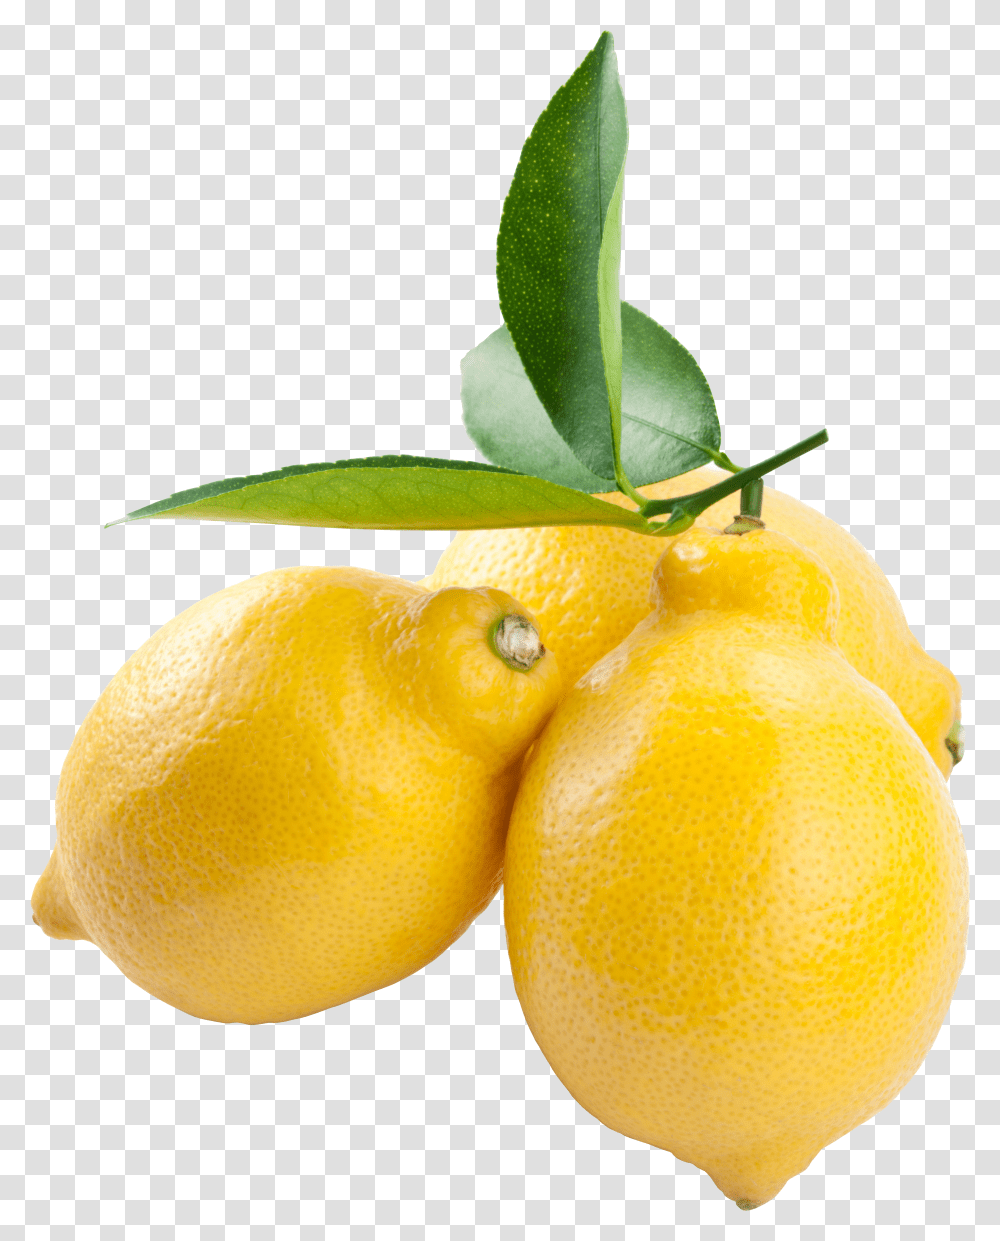 Lemon In High Resolution Lemon Background Fruit Transparent Png